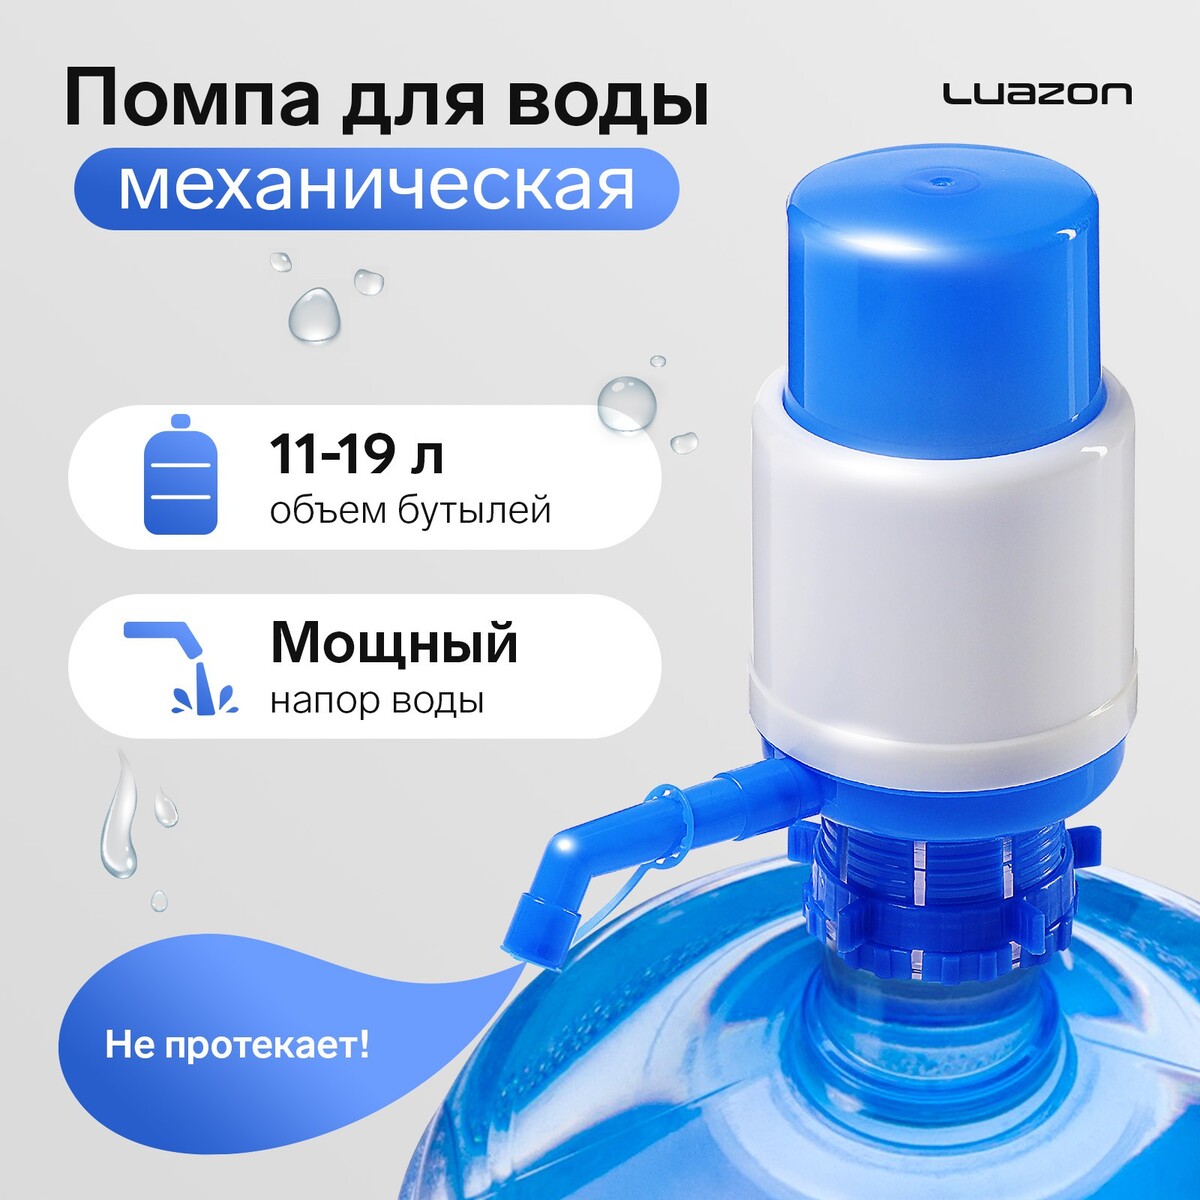 Помпа для воды luazon, механическая, средняя, под бутыль от 11 до 19 л, голубая фильтр для воды аквабрайт абф триа умягчение для холодной воды система под мойку